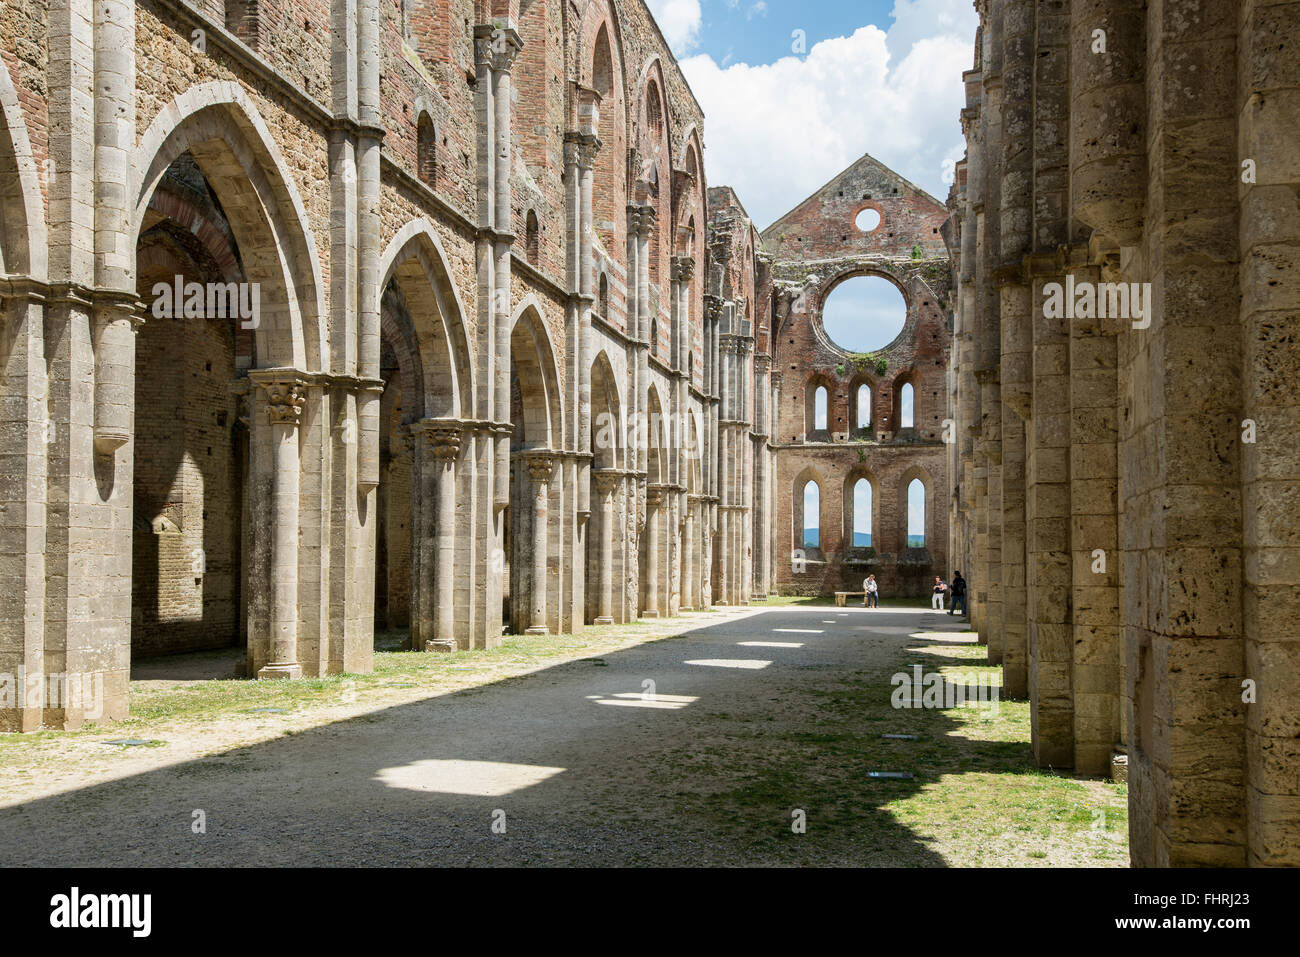 Ruins of the Cistercian Monastery Abbey of Saint Galgano, Abbazia di San Galgano, Chiusdino, Province of Siena, Tuscany, Italy Stock Photo